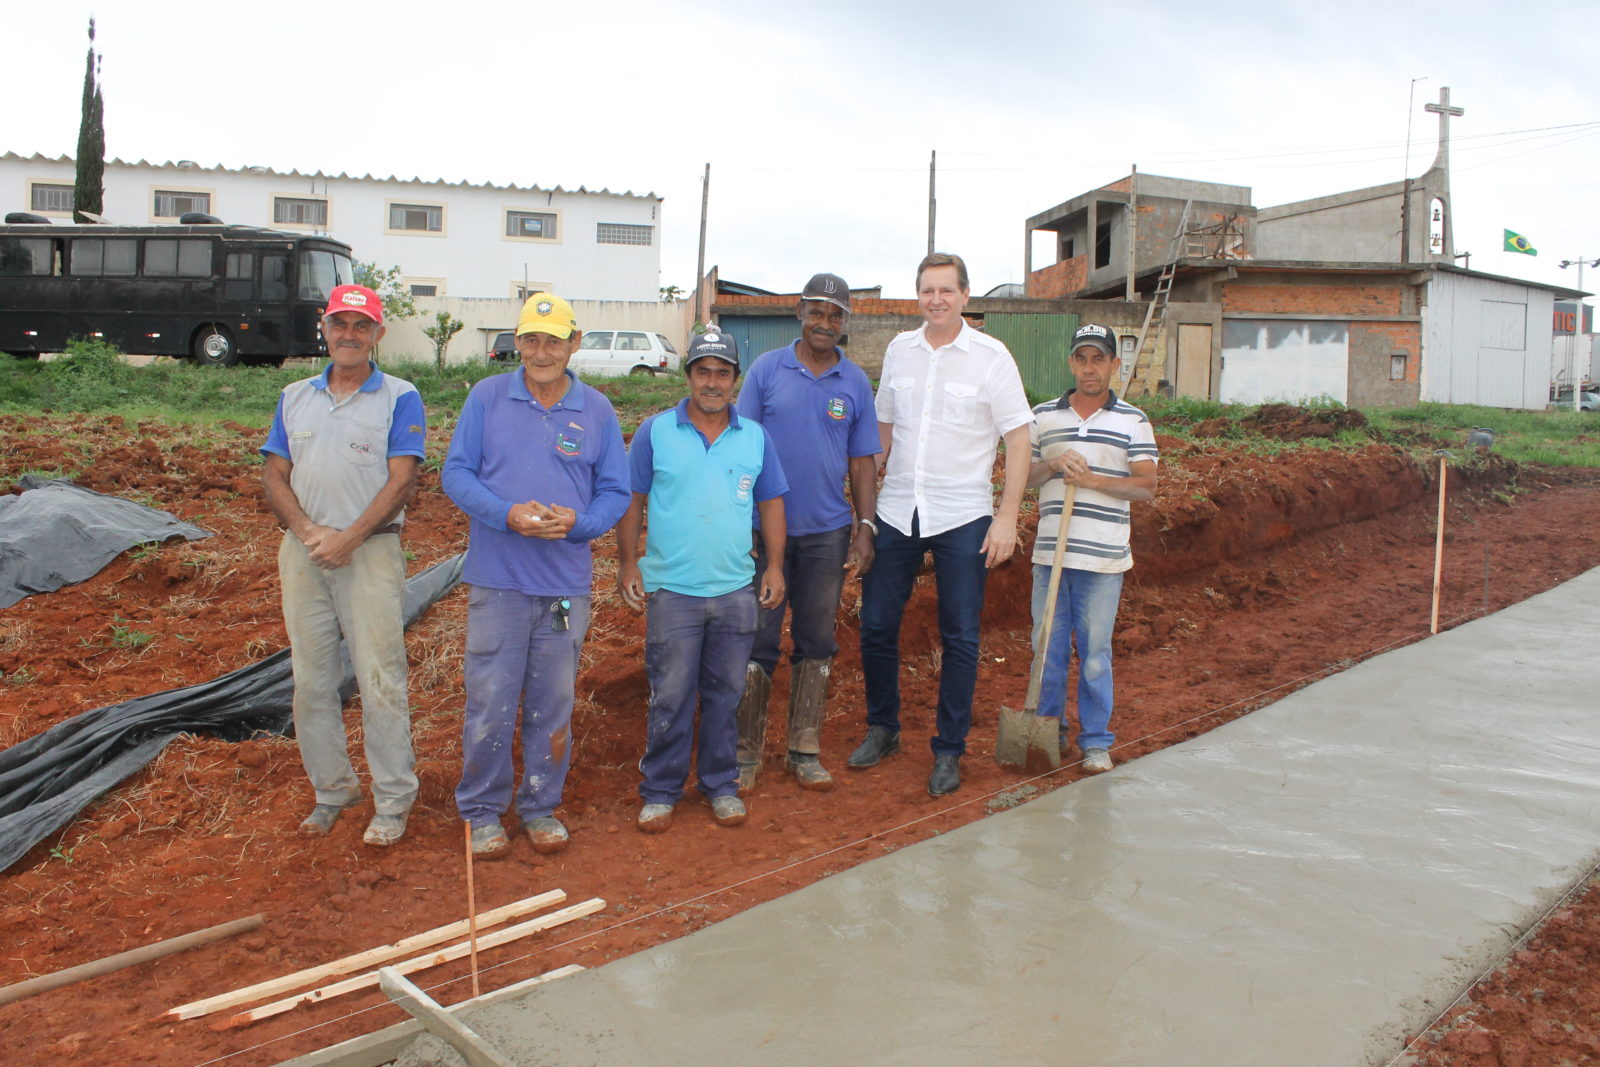 Acessibilidade: Com recursos próprios, gestão Heliton do Valle constrói calçada na Vila São João em Itararé (SP)